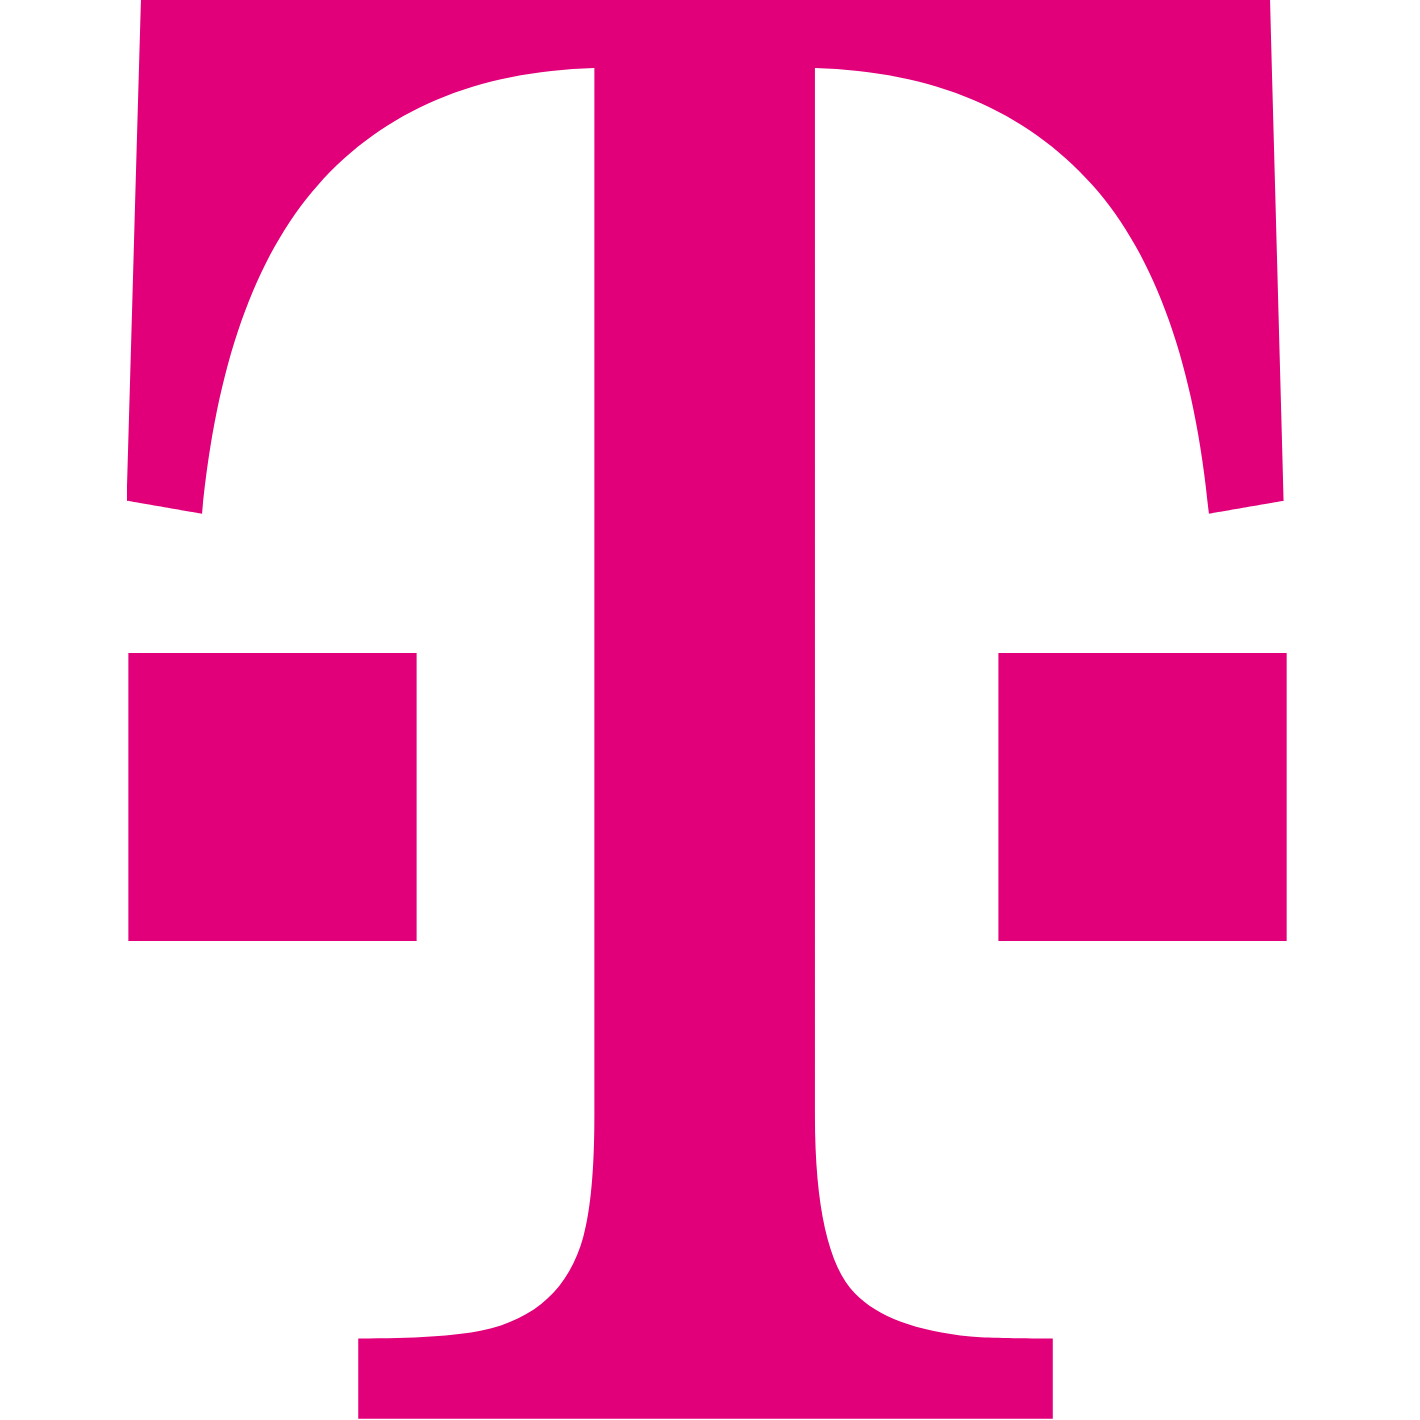 Deutche Telekom